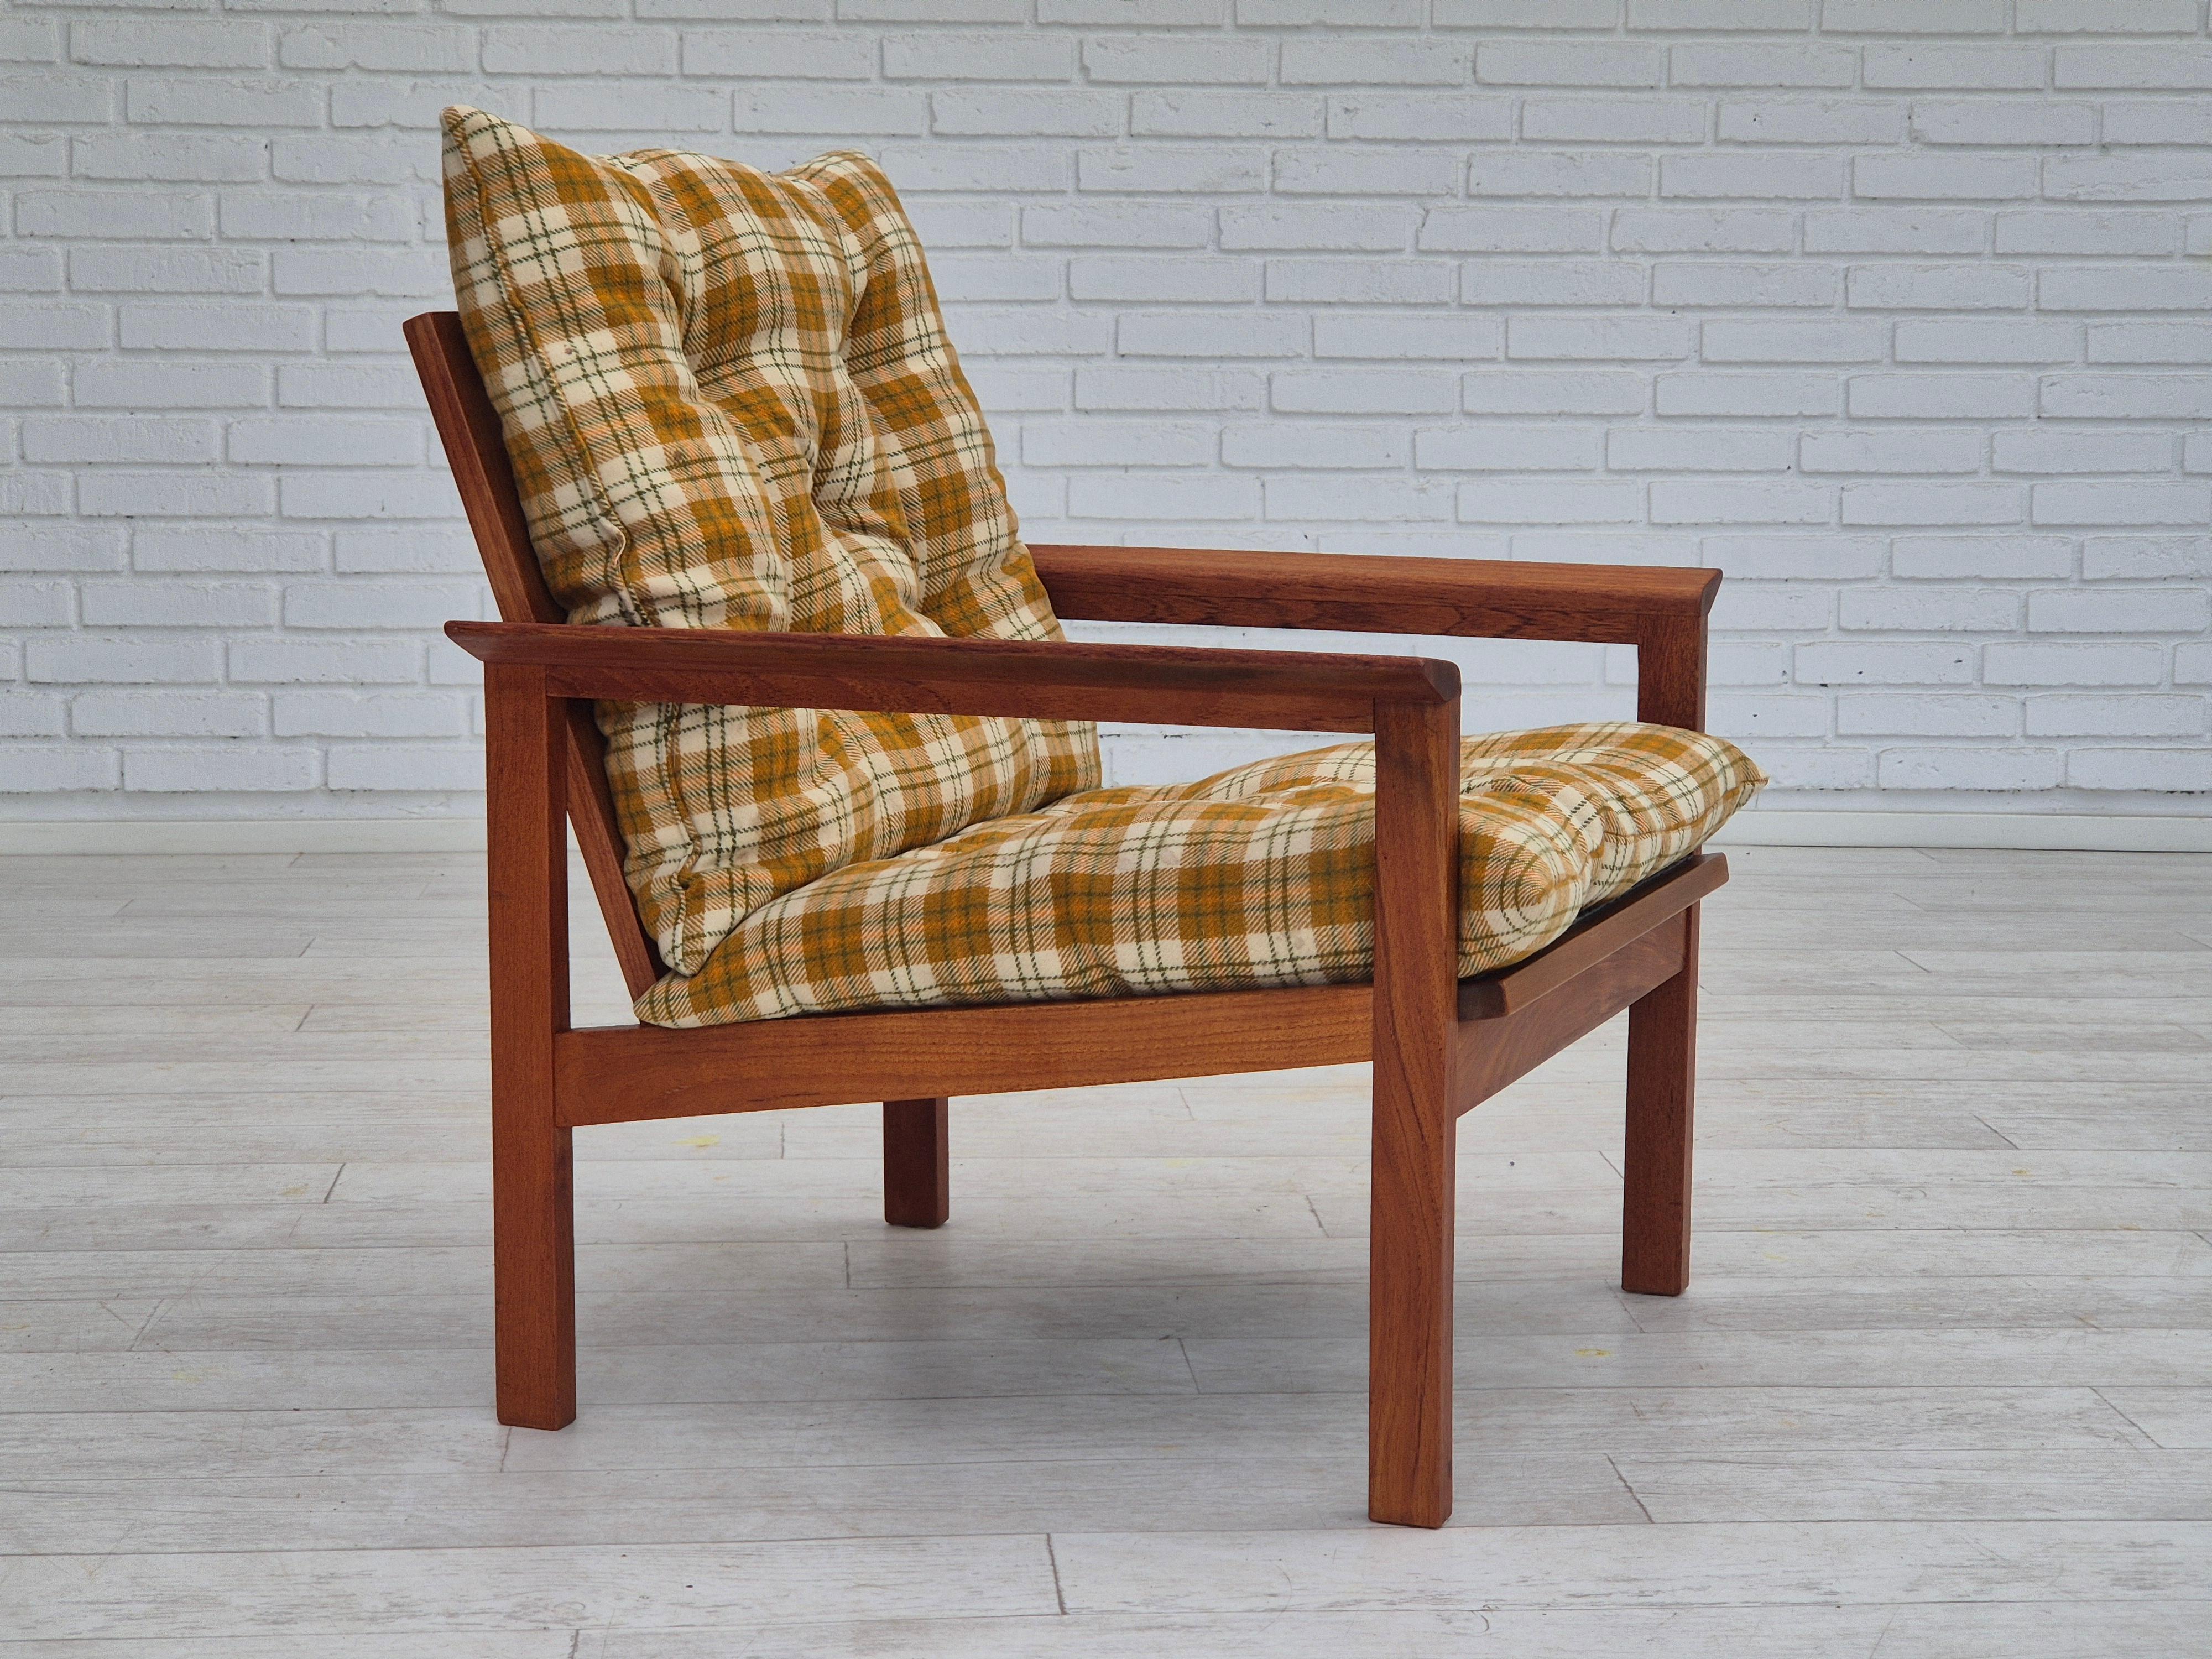 1970er, dänischer Sessel in sehr gutem Originalzustand: keine Gerüche und keine Flecken. Multicolor-Möbel aus Wollstoff, Teakholz. Hellbraune Lederknöpfe. Holzkonstruktion erneuert. Hergestellt von einem dänischen Möbelhersteller in den Jahren um